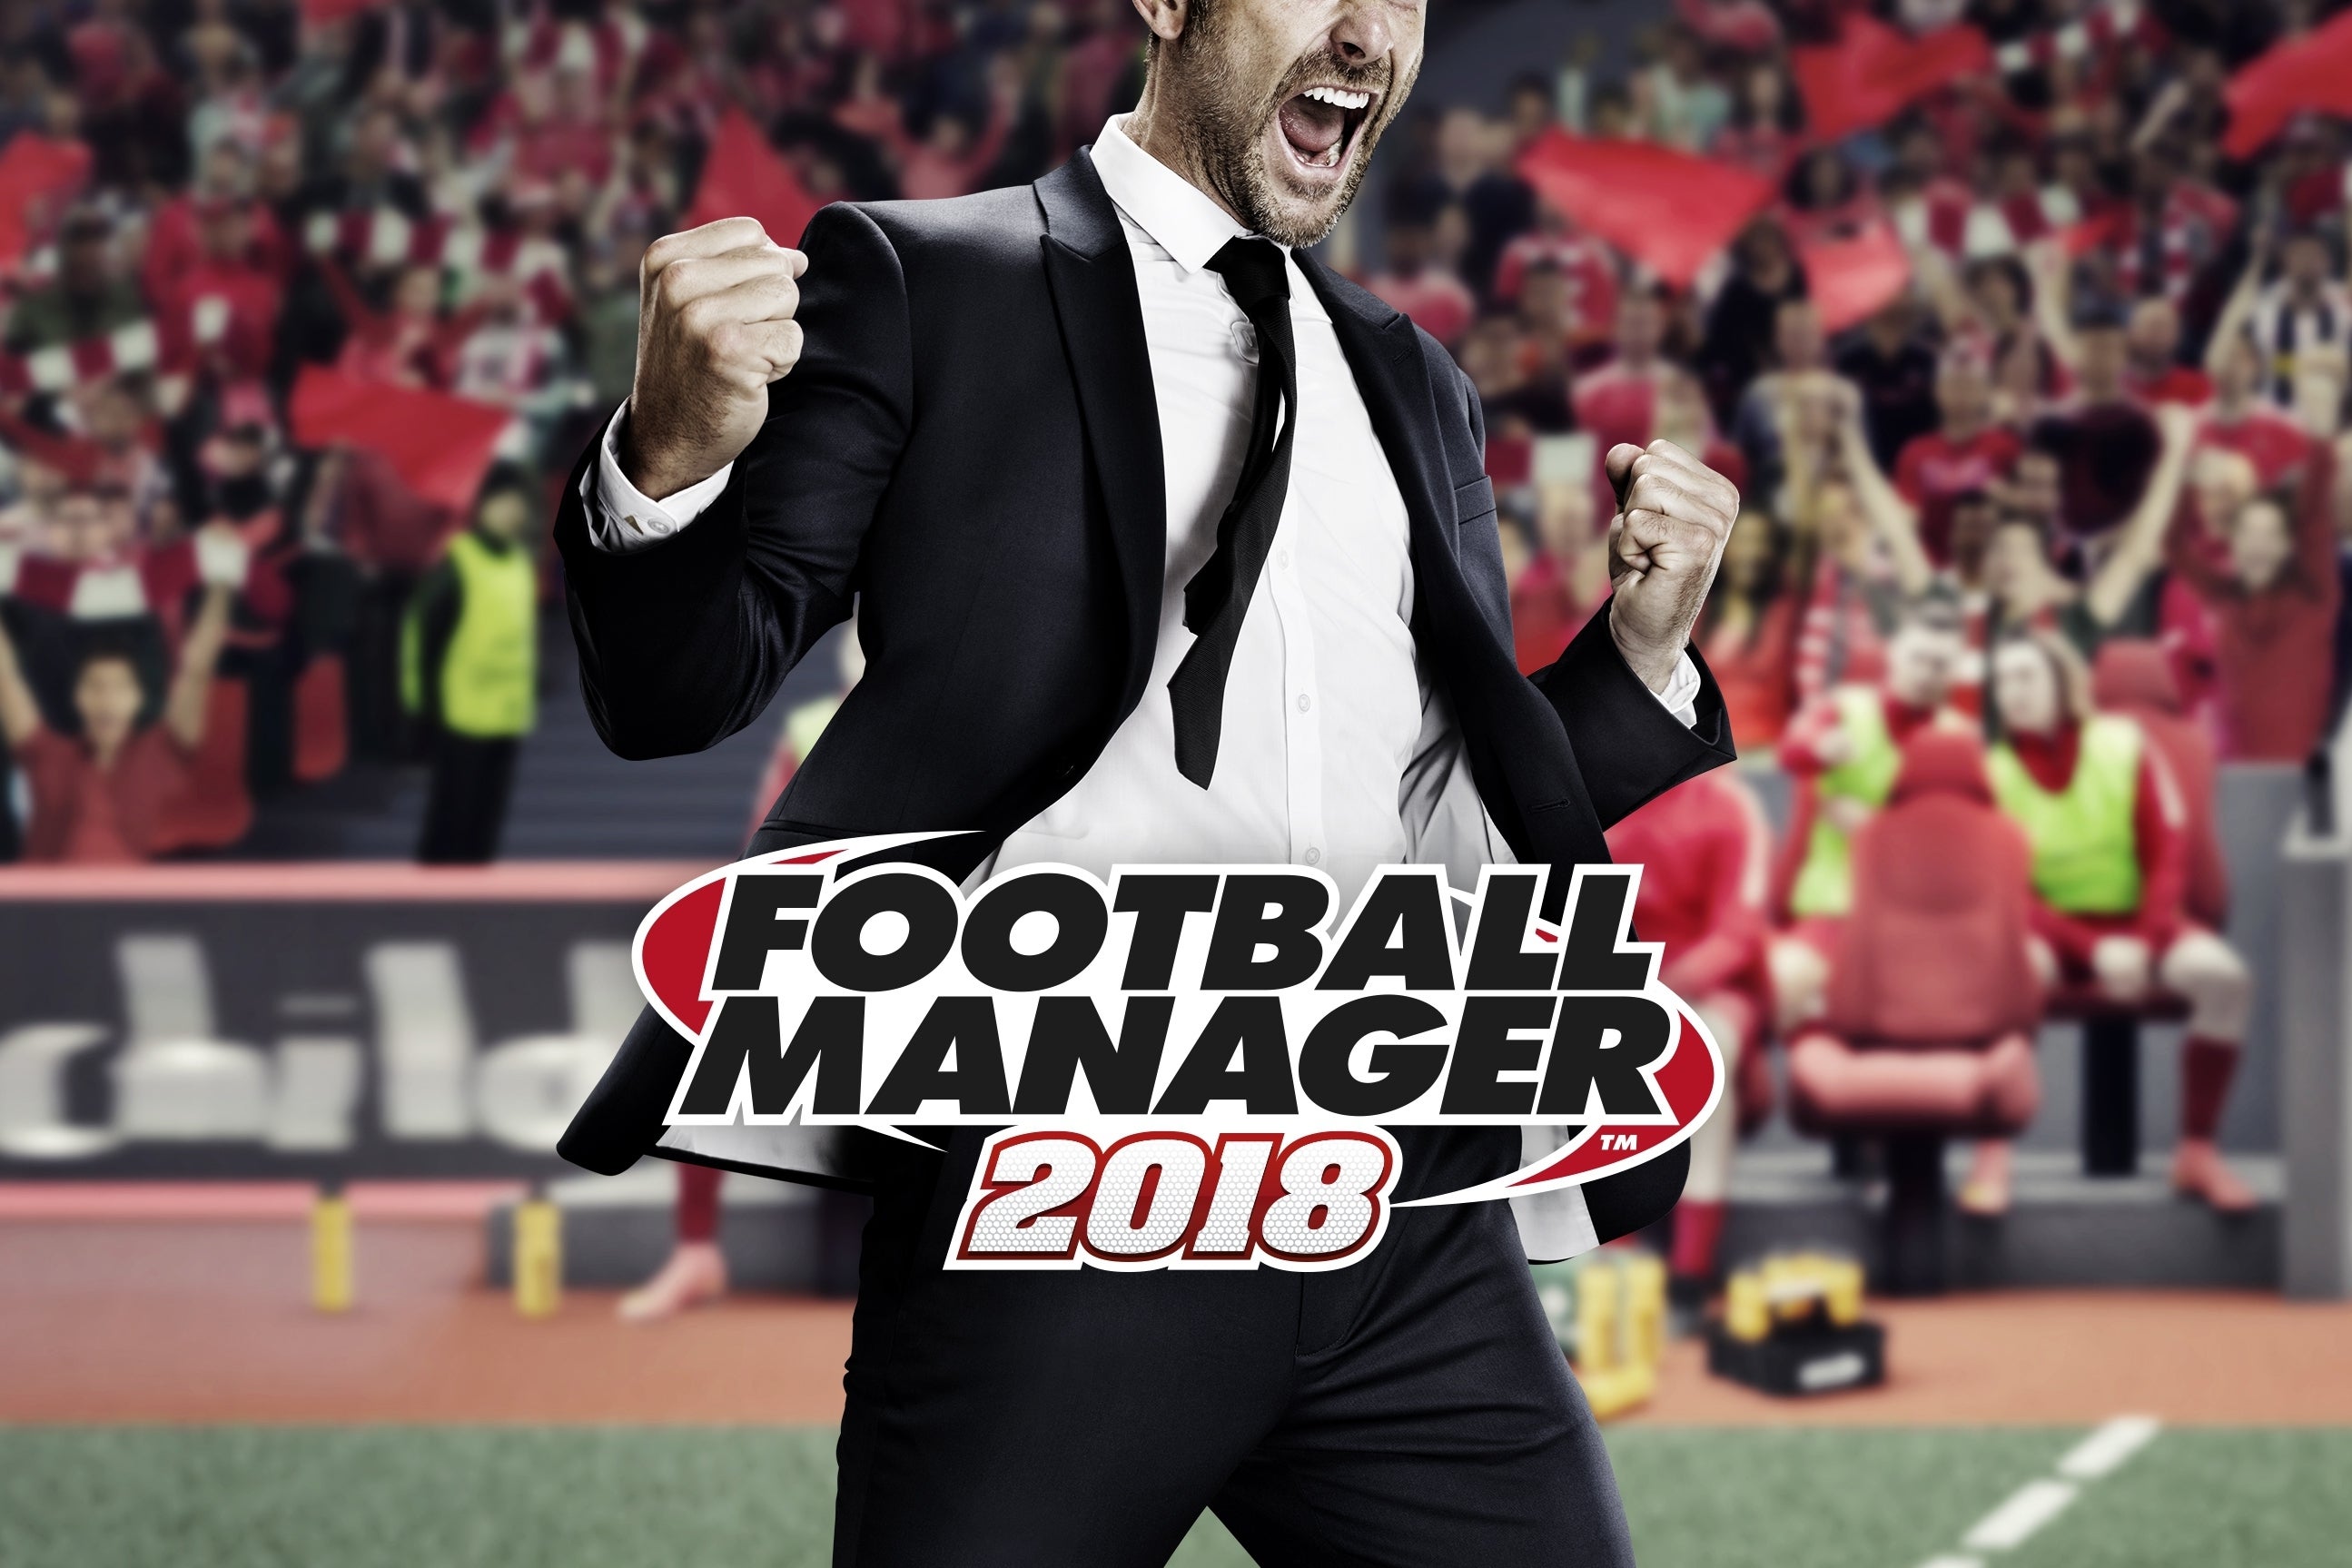 Imagen para Footbal Manager 2018 sale a la venta en noviembre